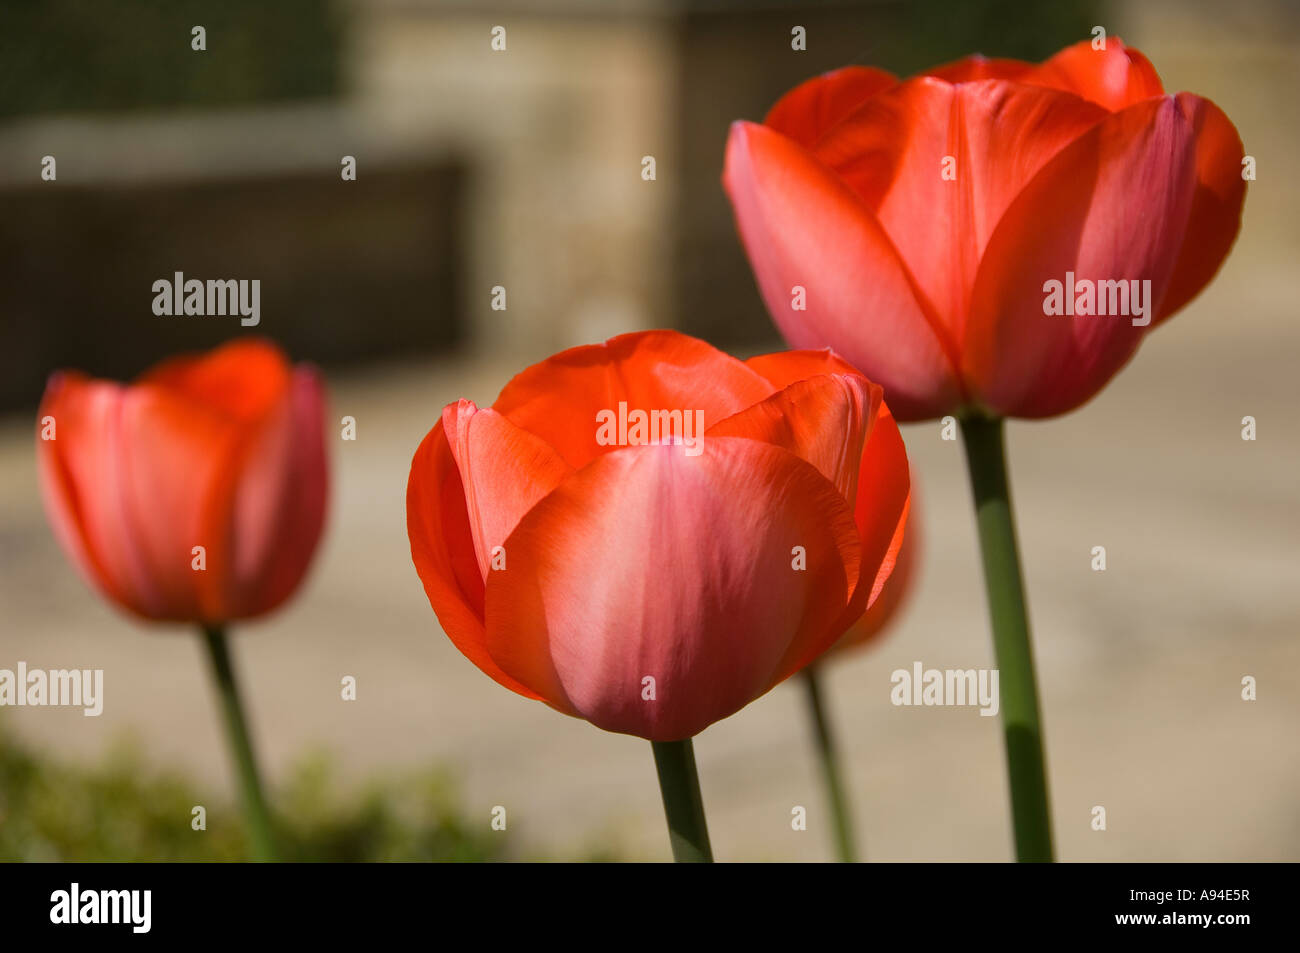 Tulipes rouges tulipes fleurs fleur fleur fleur fleur au printemps gros plan croissance dans le jardin Angleterre Royaume-Uni Grande-Bretagne Banque D'Images